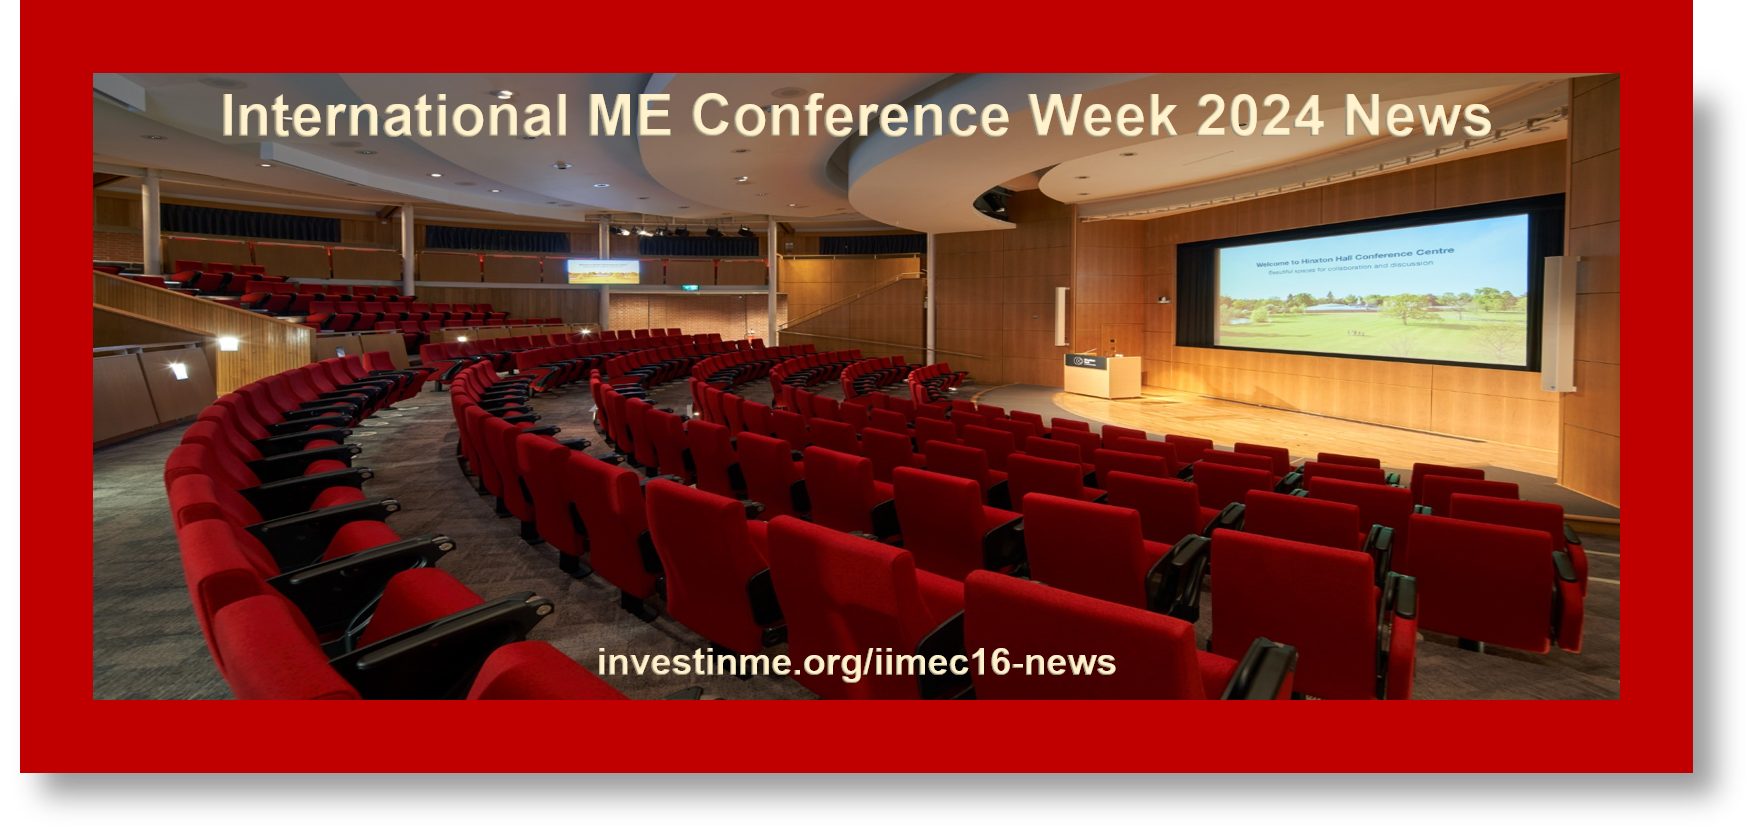 IIMEC16 news